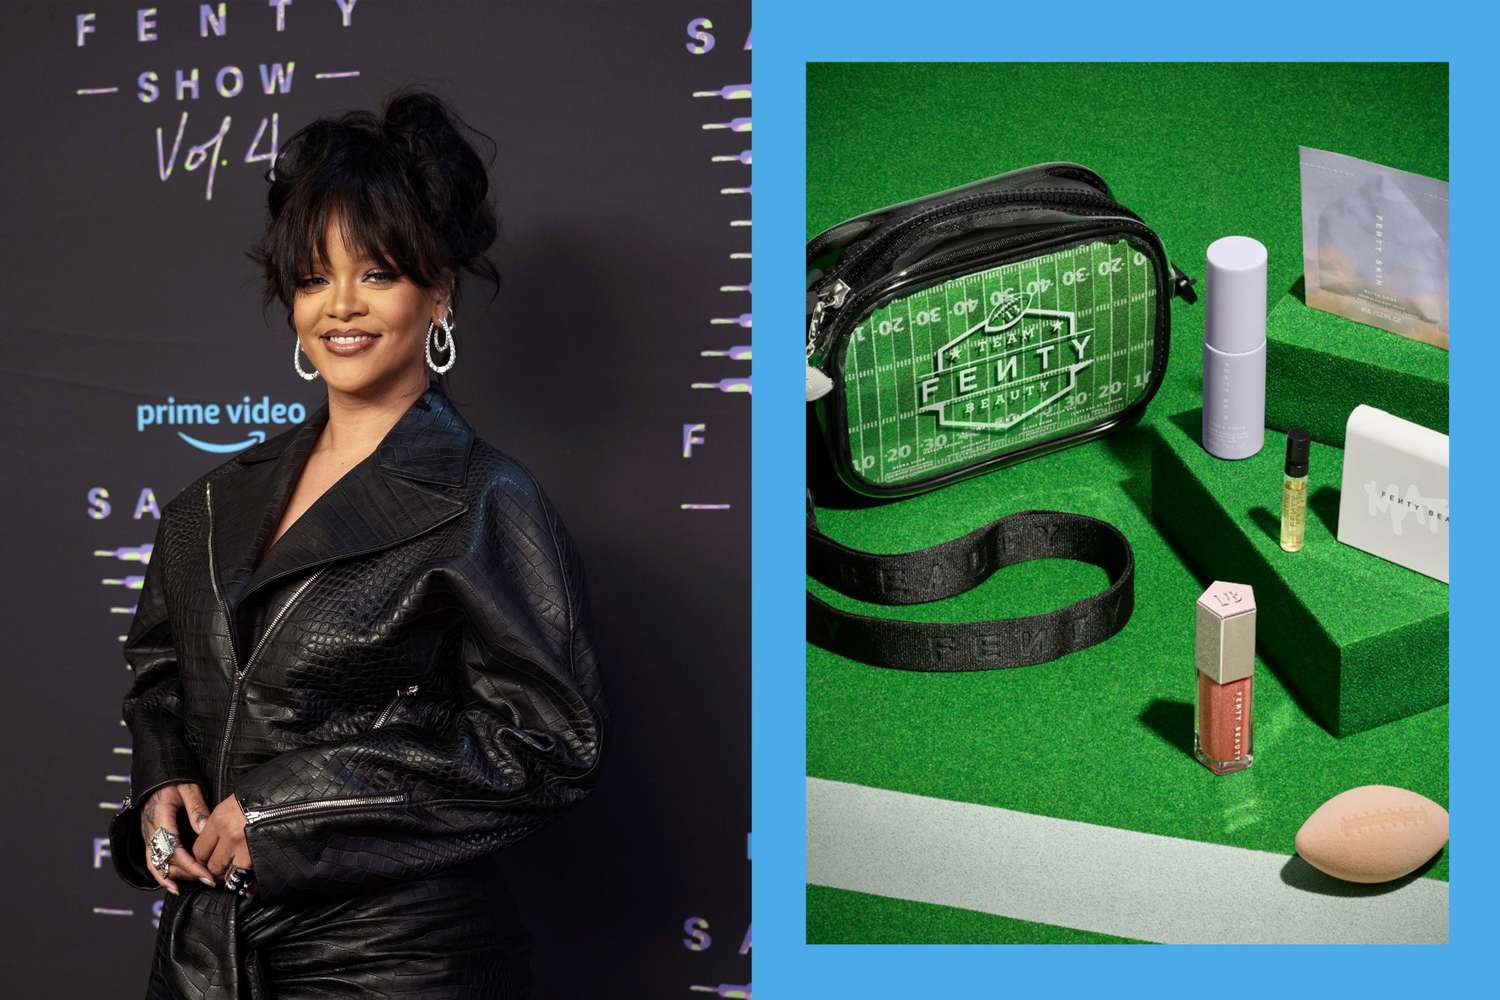 ¡Aterrizaje! El nuevo kit de belleza Fenty aprobado por el estadio de Rihanna viene con una esponja de maquillaje de fútbol